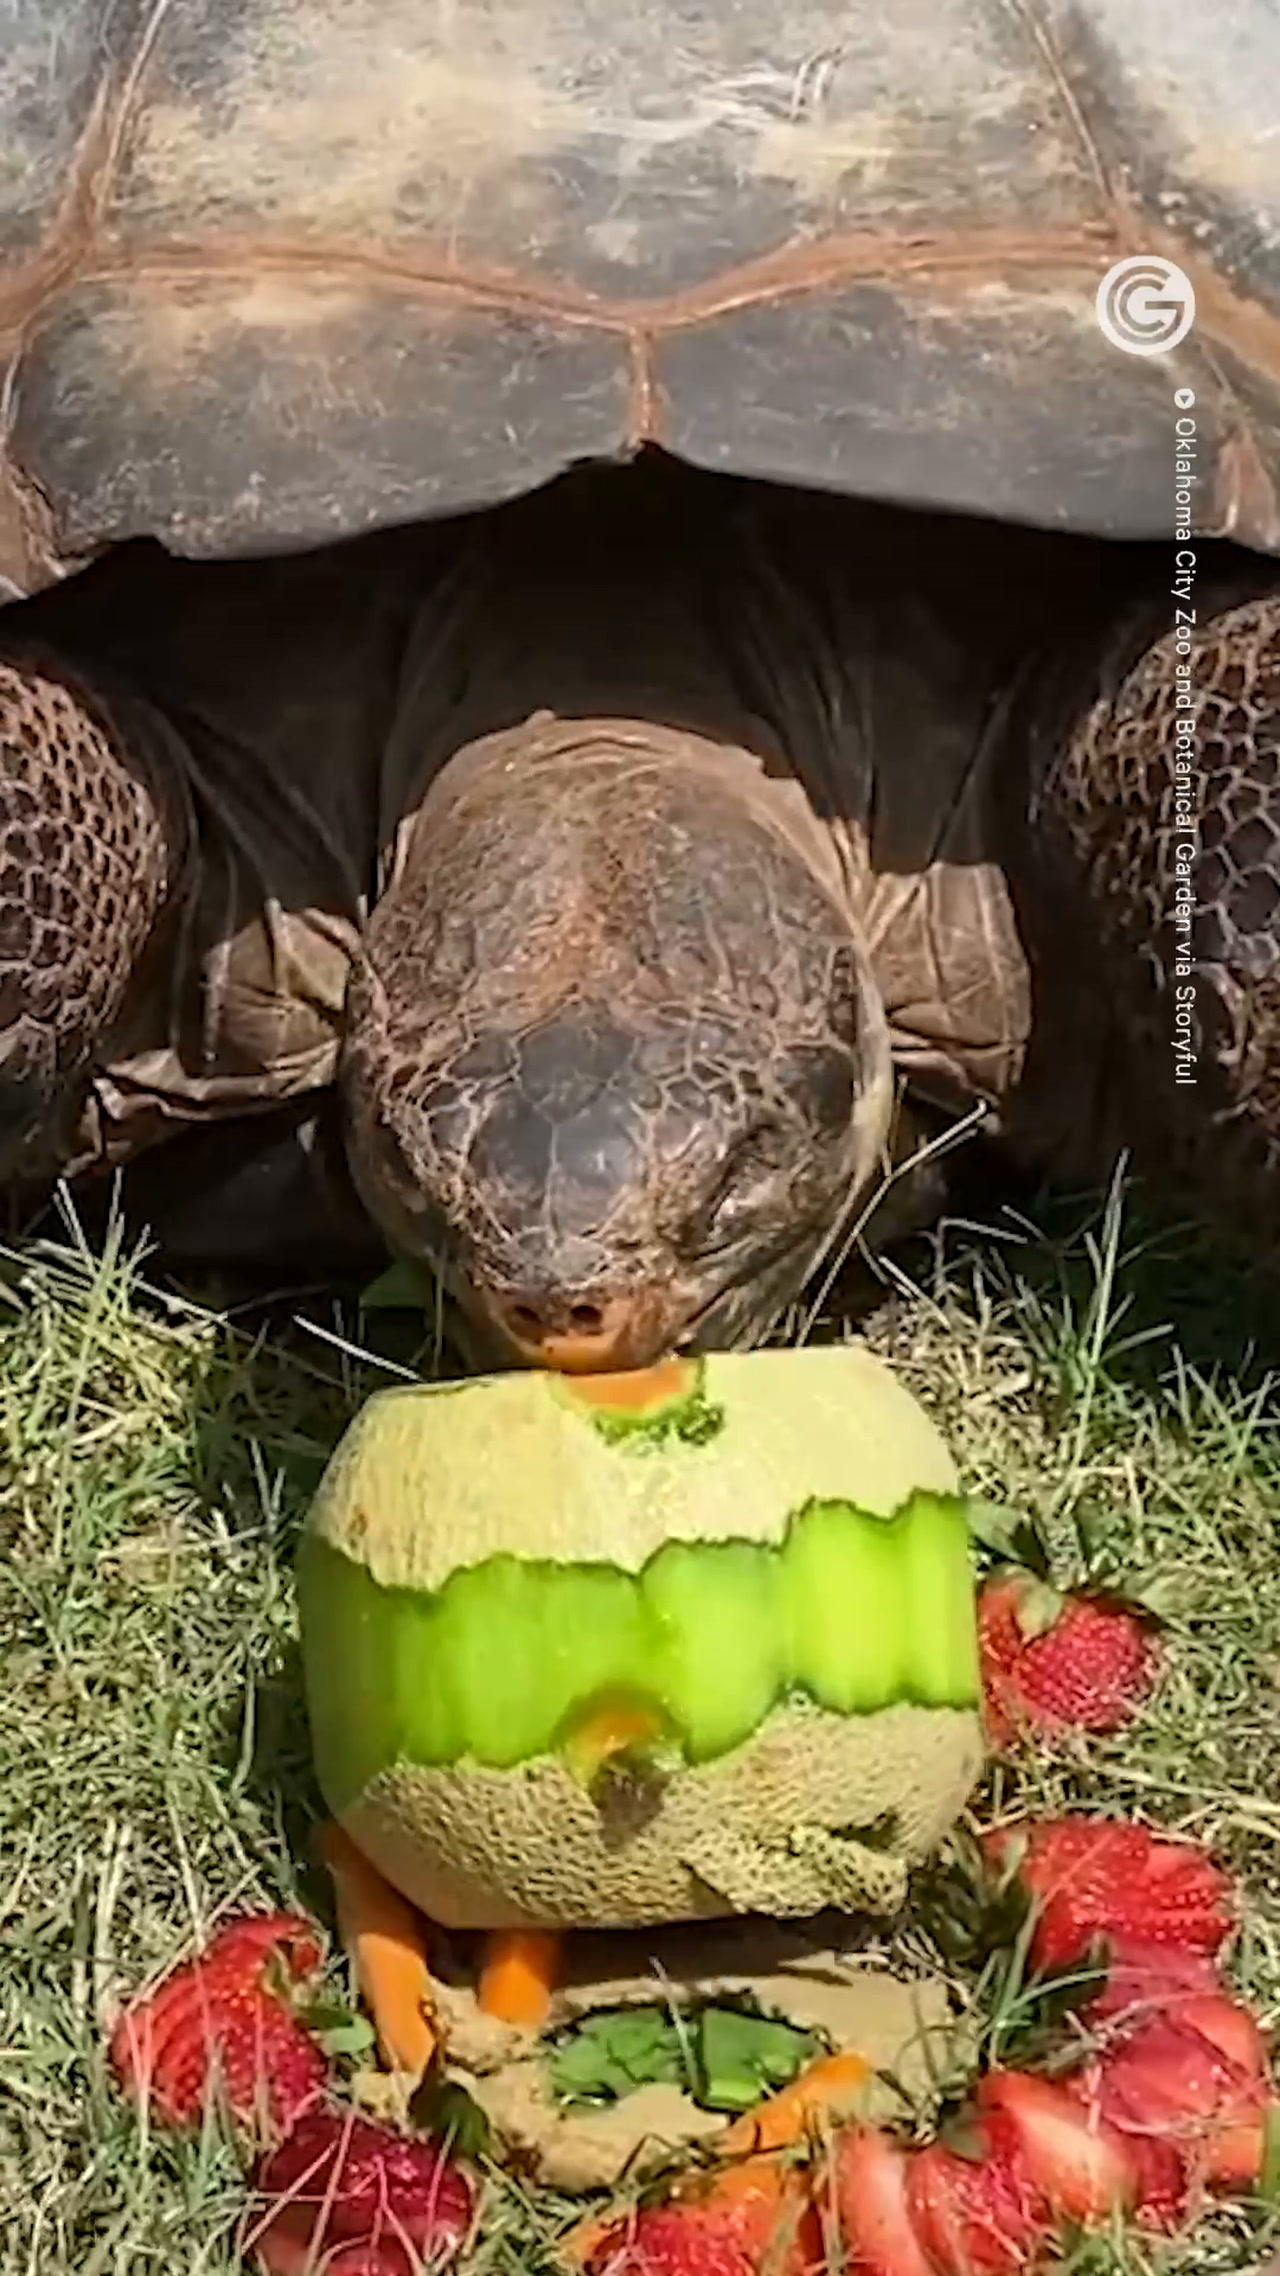 Galapagos Tortoise Celebrates 94th Birthday